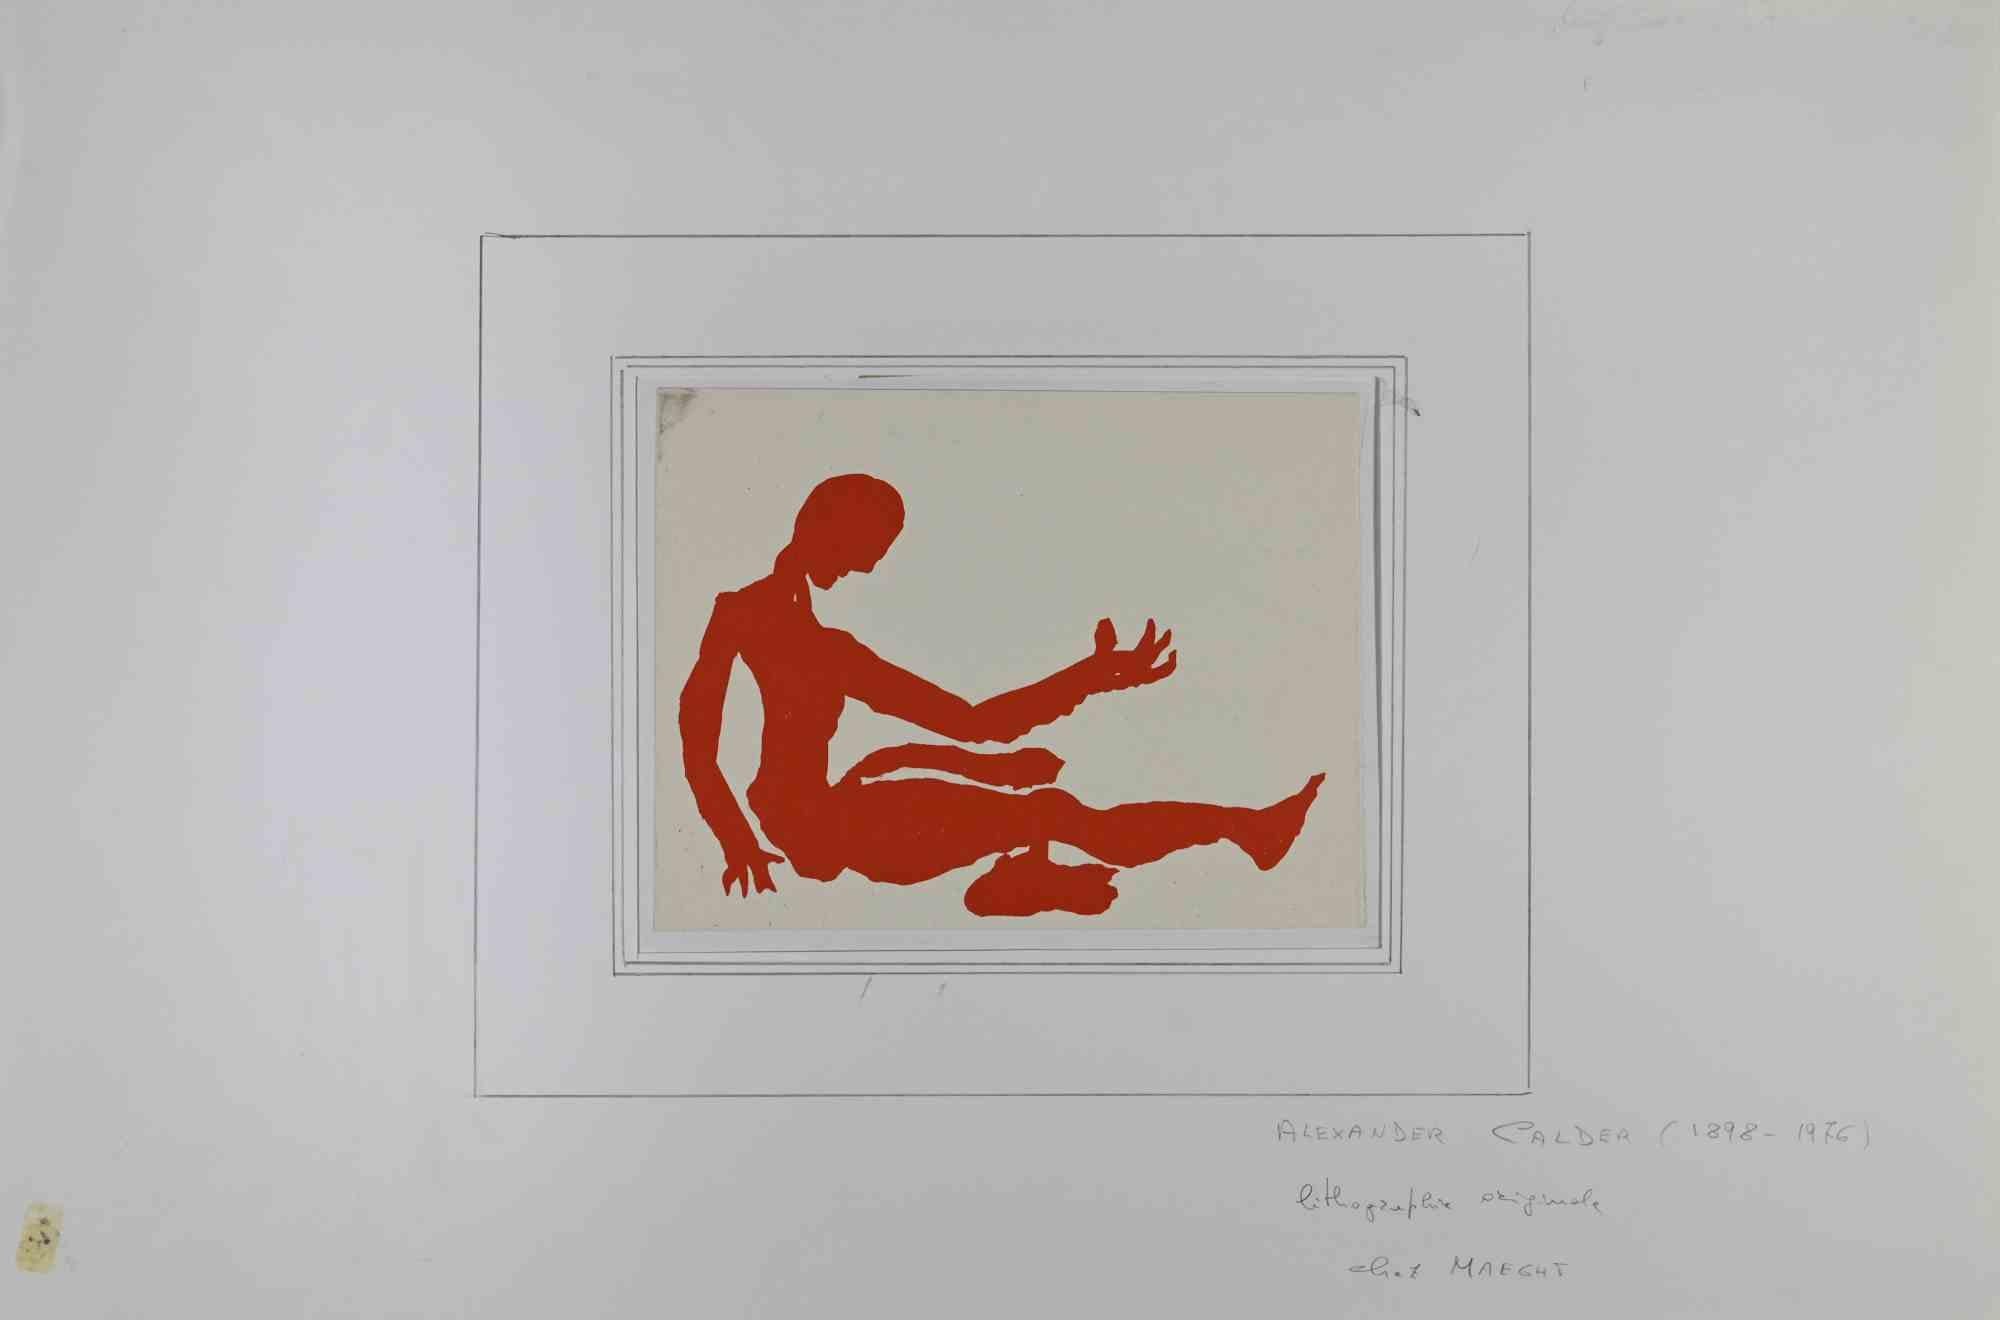 Untitled ist eine Lithographie auf Papier, die in der zweiten Hälfte des 20. Jahrhunderts von Alexander Calder geschaffen wurde.

Sehr guter Zustand mit einem weißen Passepartout aus Karton (32 x 50 cm).

Alexander Calder (22. Juli 1898 - 11.